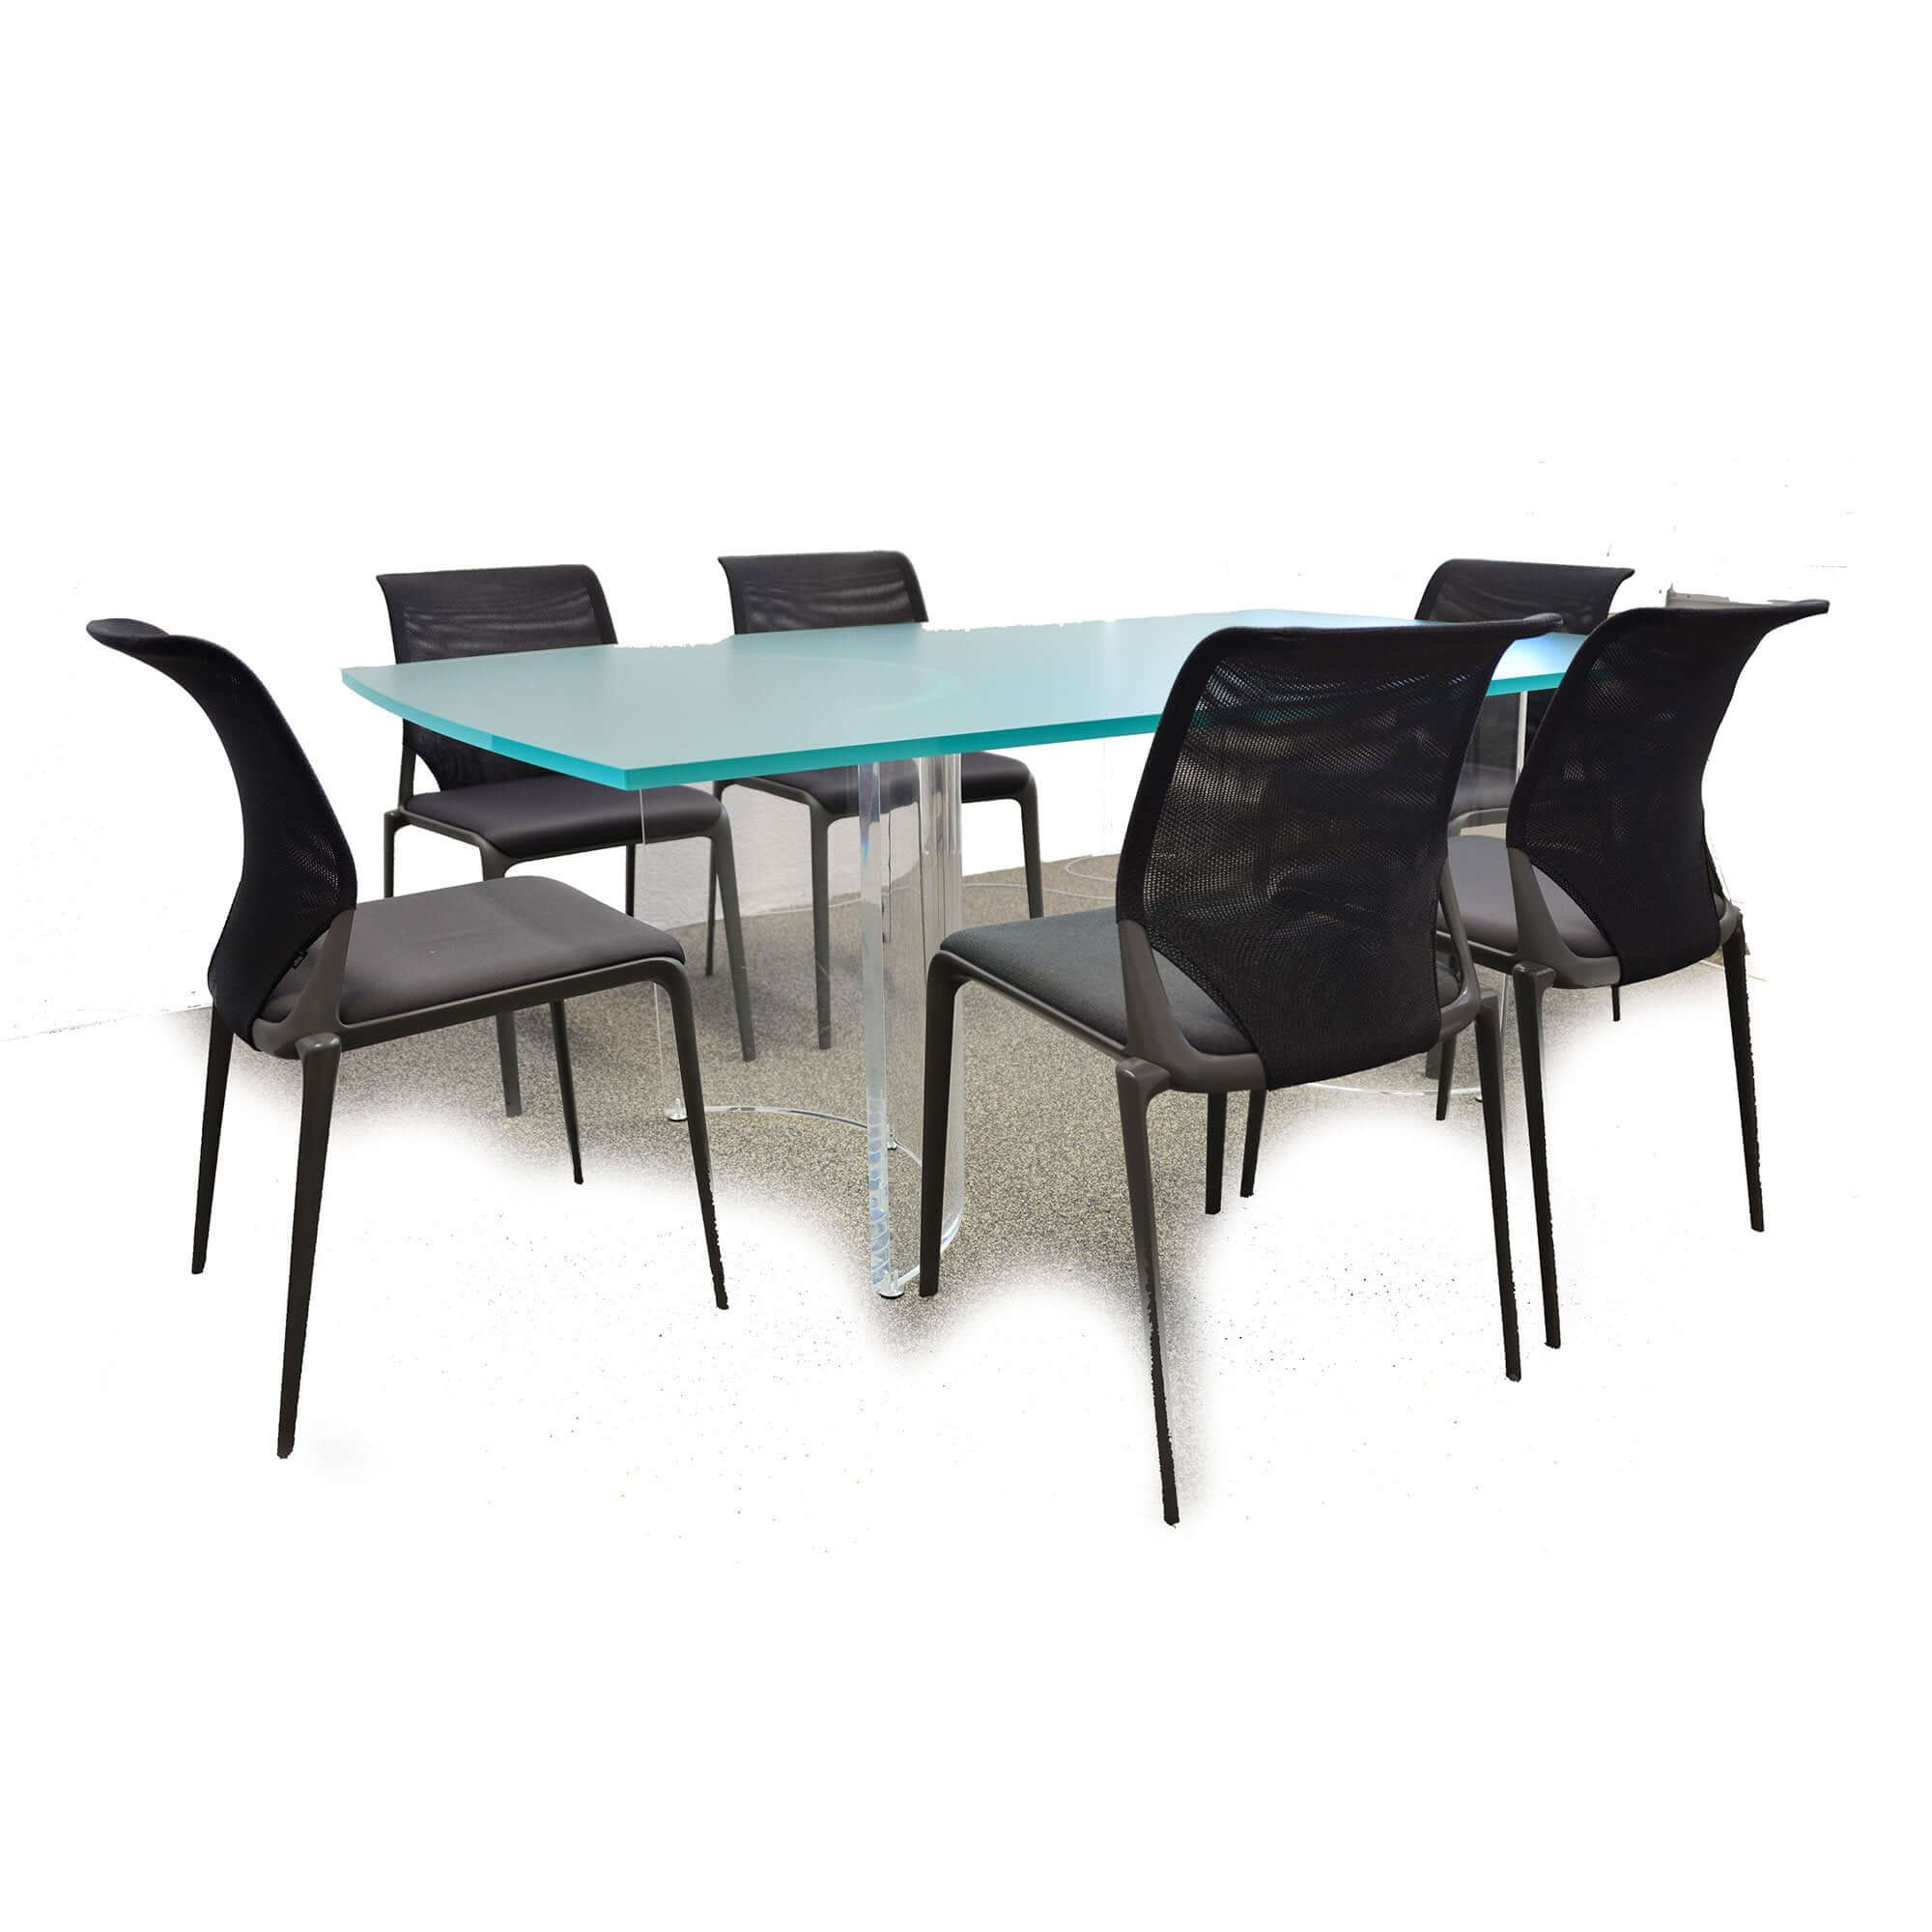 Meubles d'objet acrylic (p.e. table de réunion) faits de meubles de table en verre acrylique meubles meubles en plastique acrylic fait sur mesure collé fraisé plié